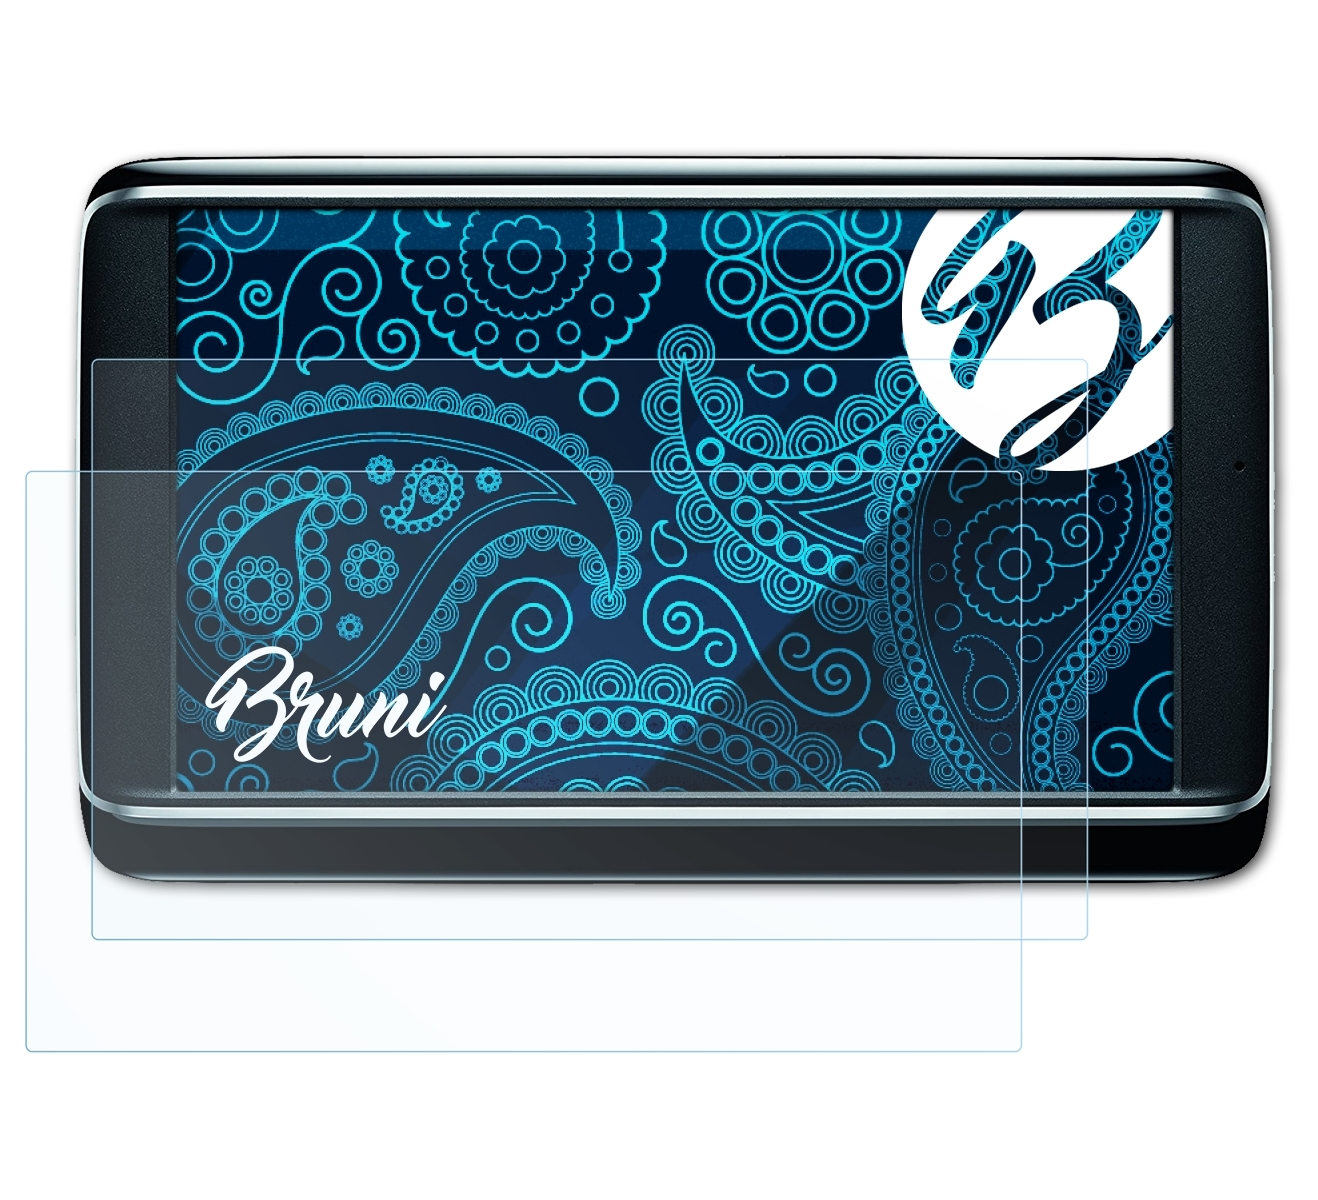 BRUNI 2x Basics-Clear Schutzfolie(für Premium) 70 Navigon